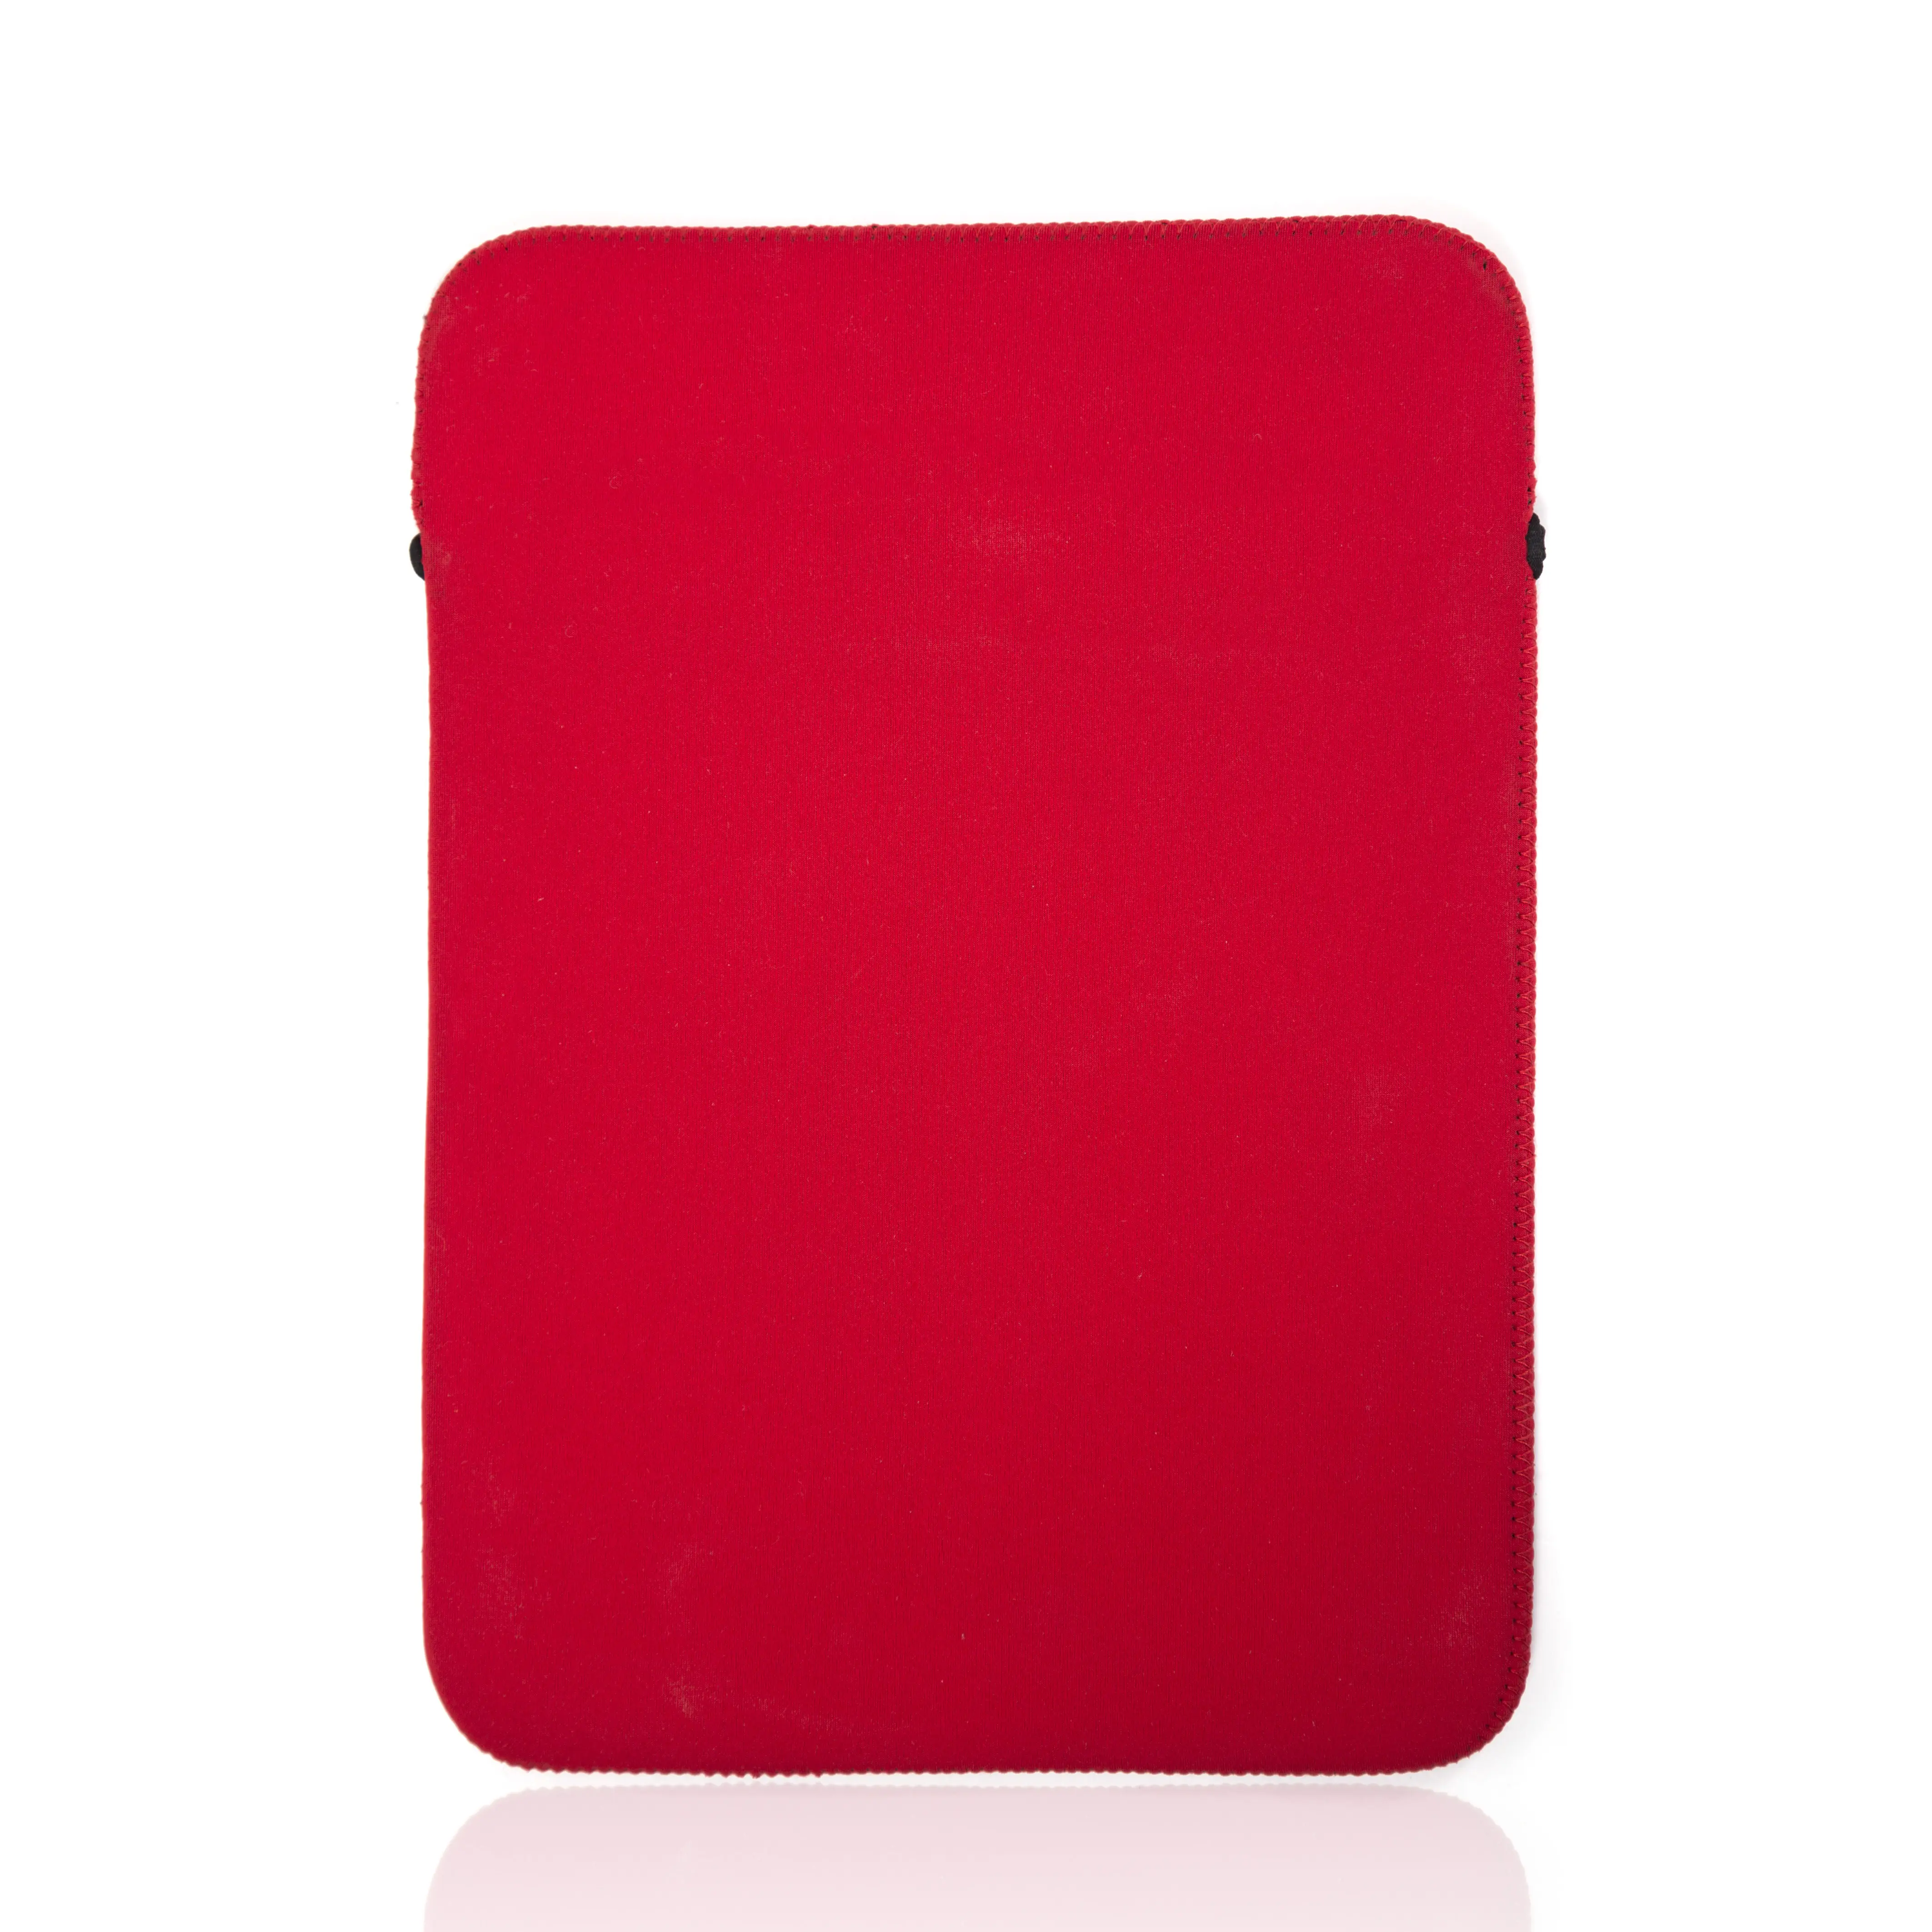 Borsa per Laptop da viaggio personalizzata ad alta quantità con custodia in Neoprene per borsa iPad a marchio privato